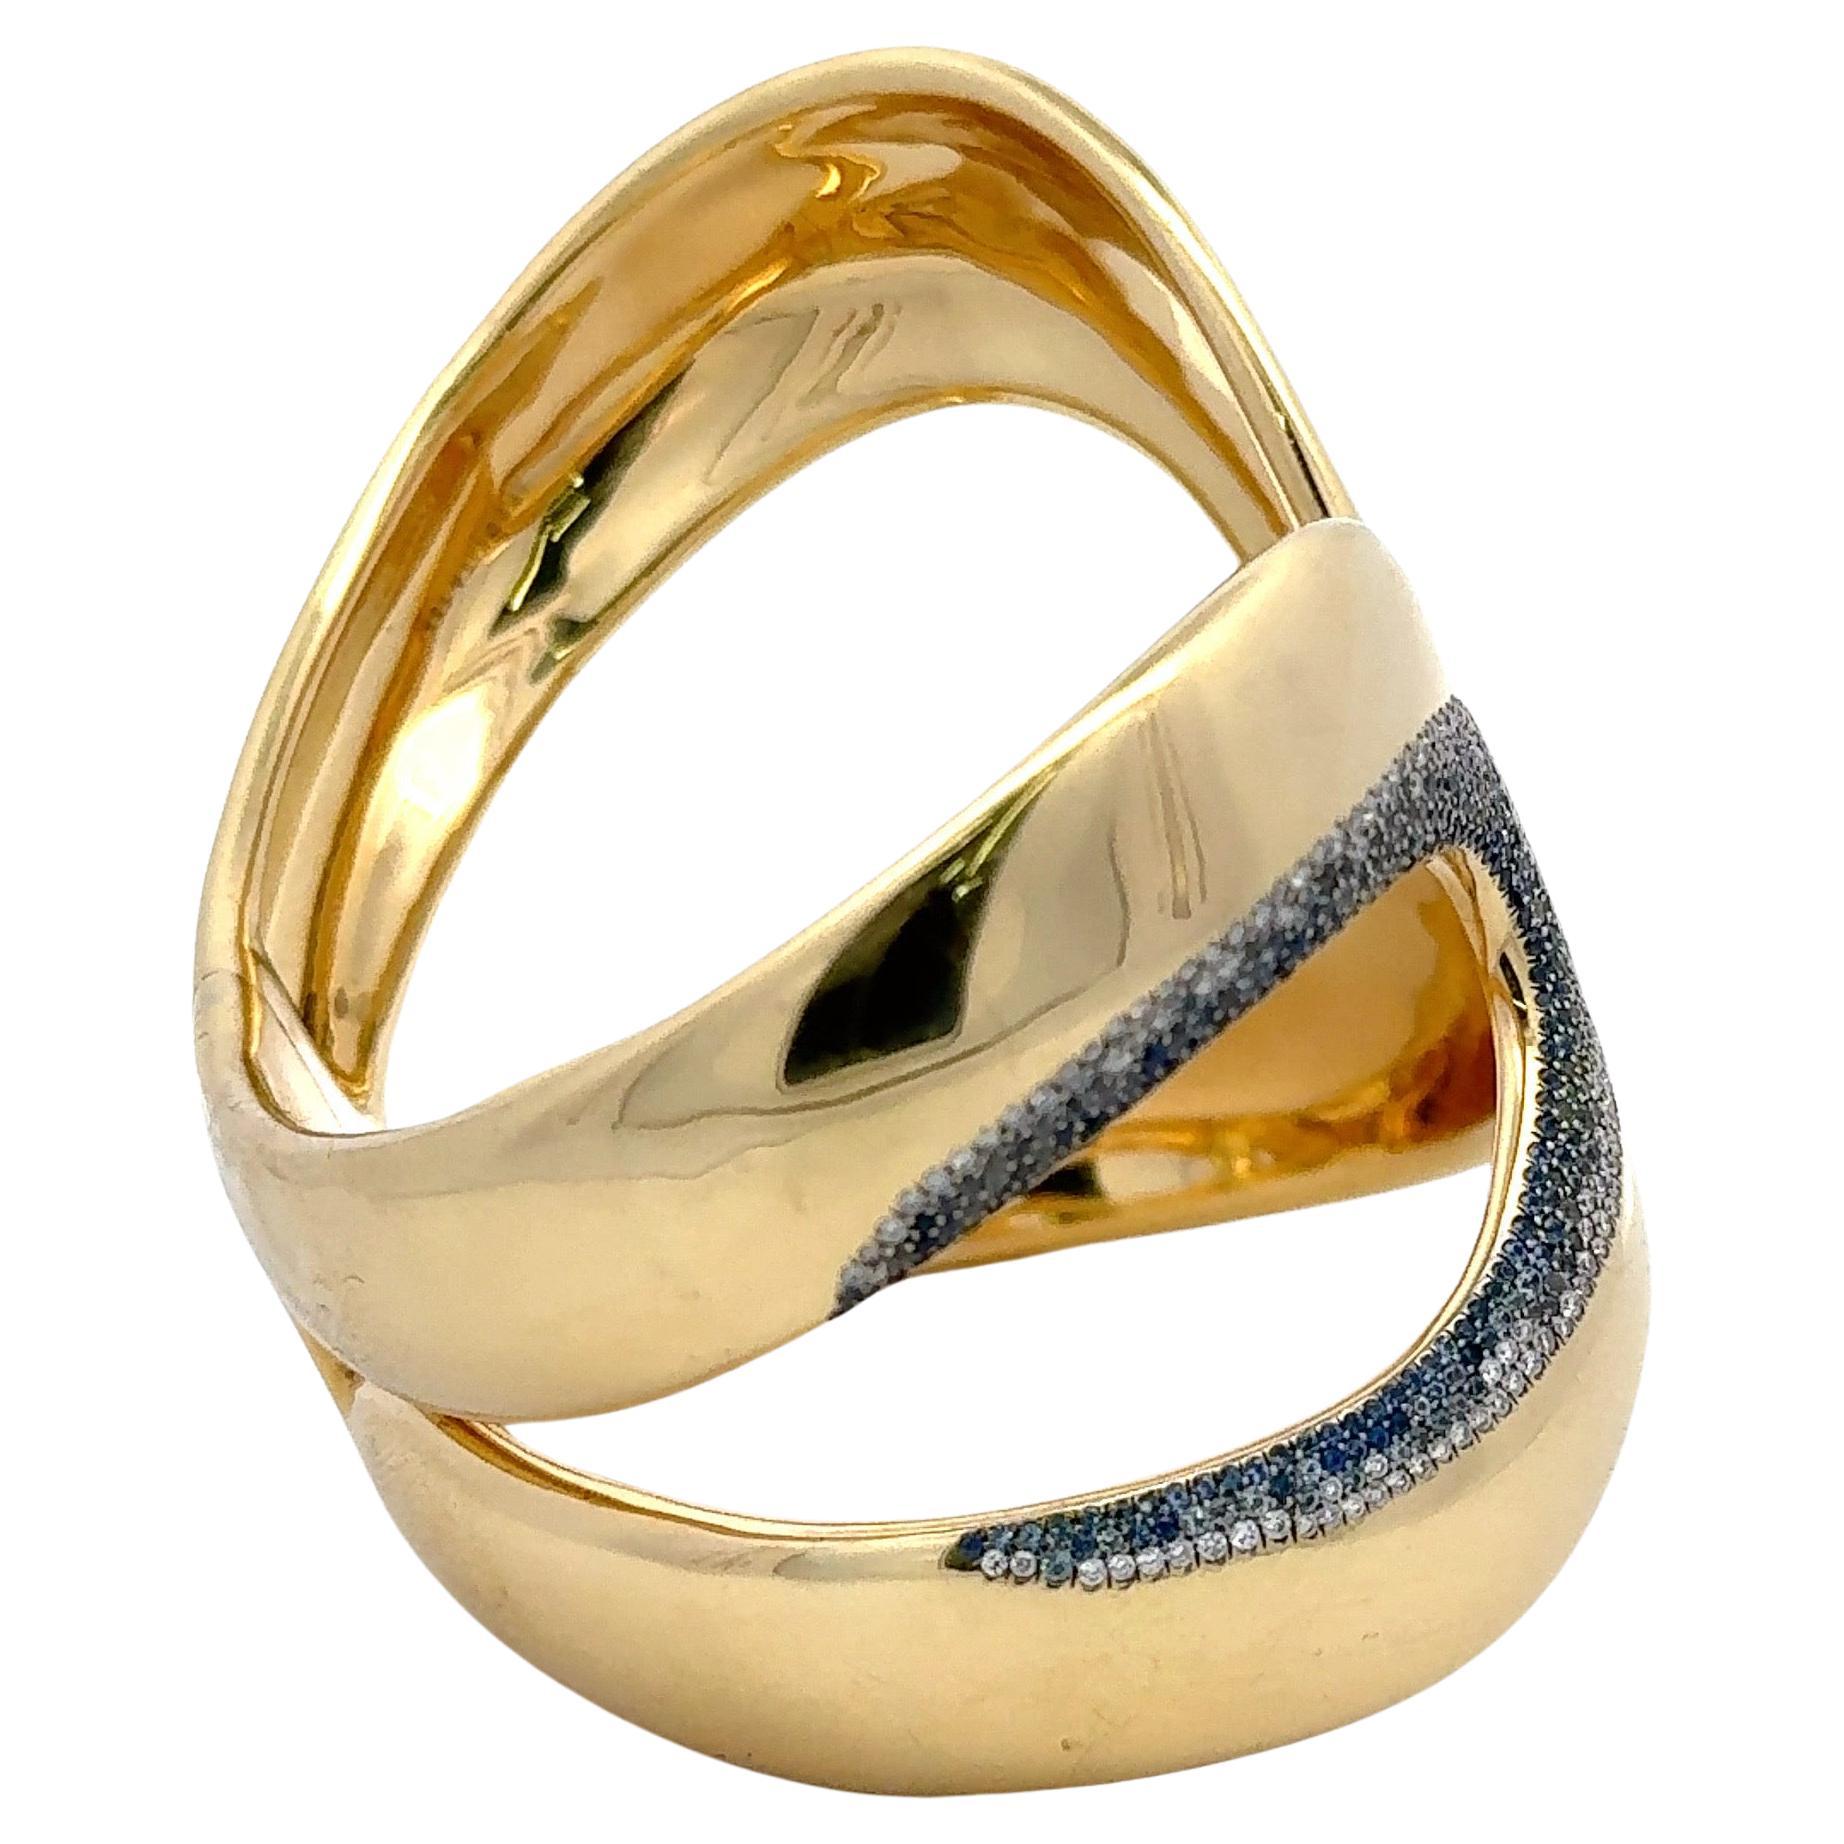 Signé Ippolita, ce large bracelet en or jaune 18 carats présente une poussière d'étoiles de brillants ronds et de saphirs pesant 1,51 gramme. 
Environ 5 carats de diamants
Fabriqué en Italie
Fermeture à charnière
Prix d'origine : 32 000